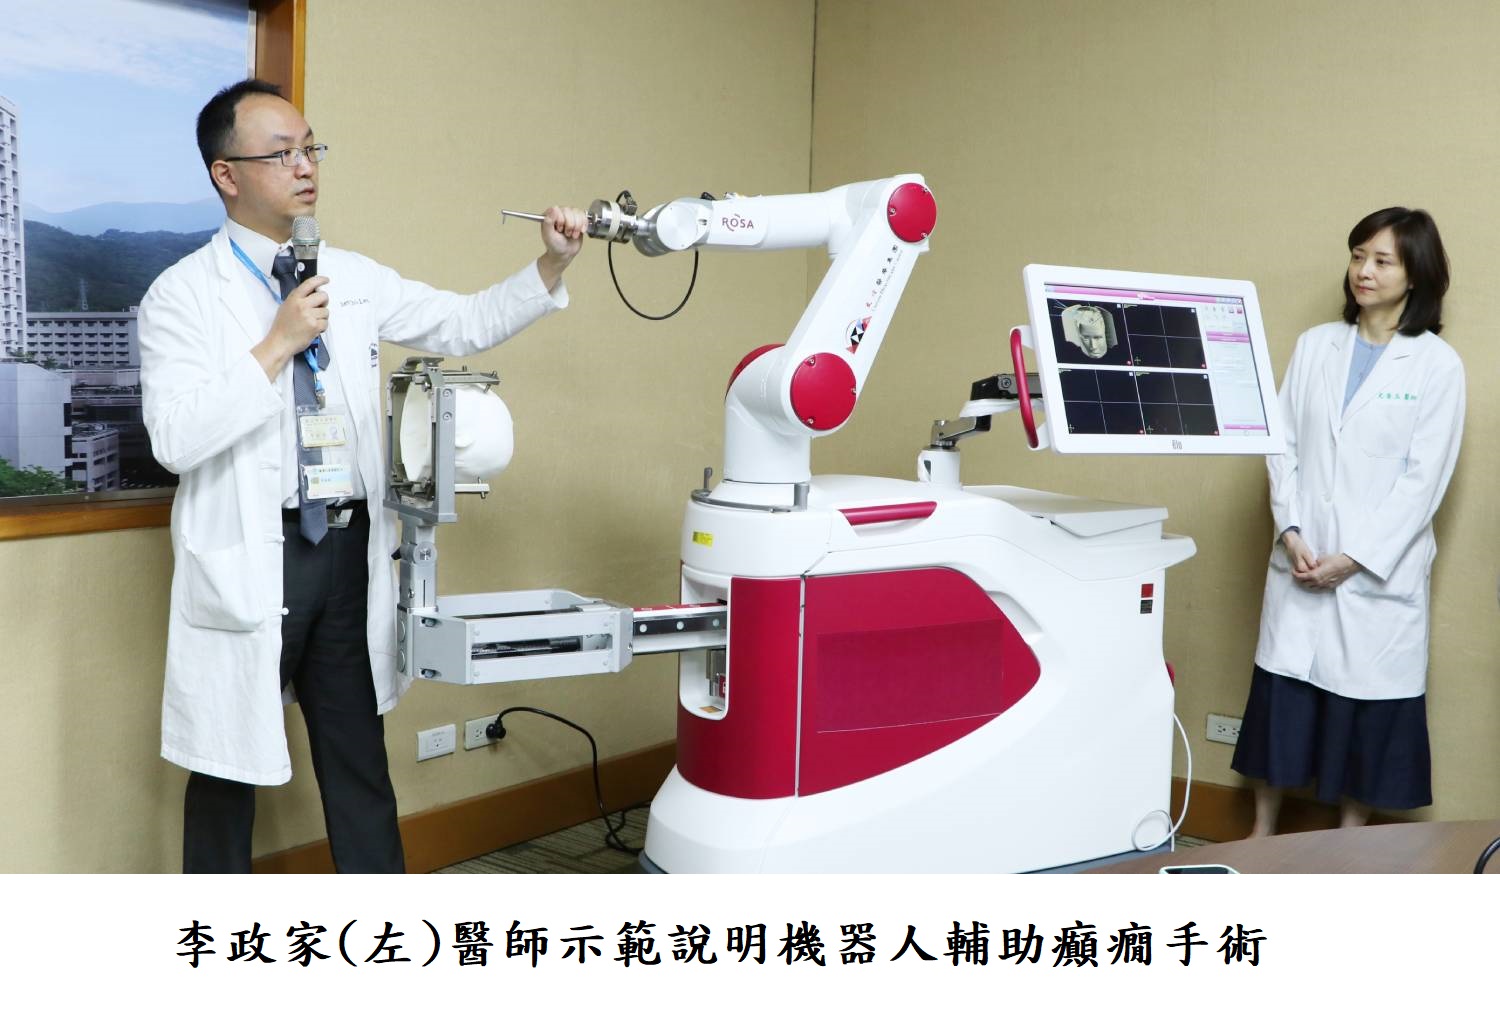 李政家(左)醫師示範說明機器人輔助癲癇手術 